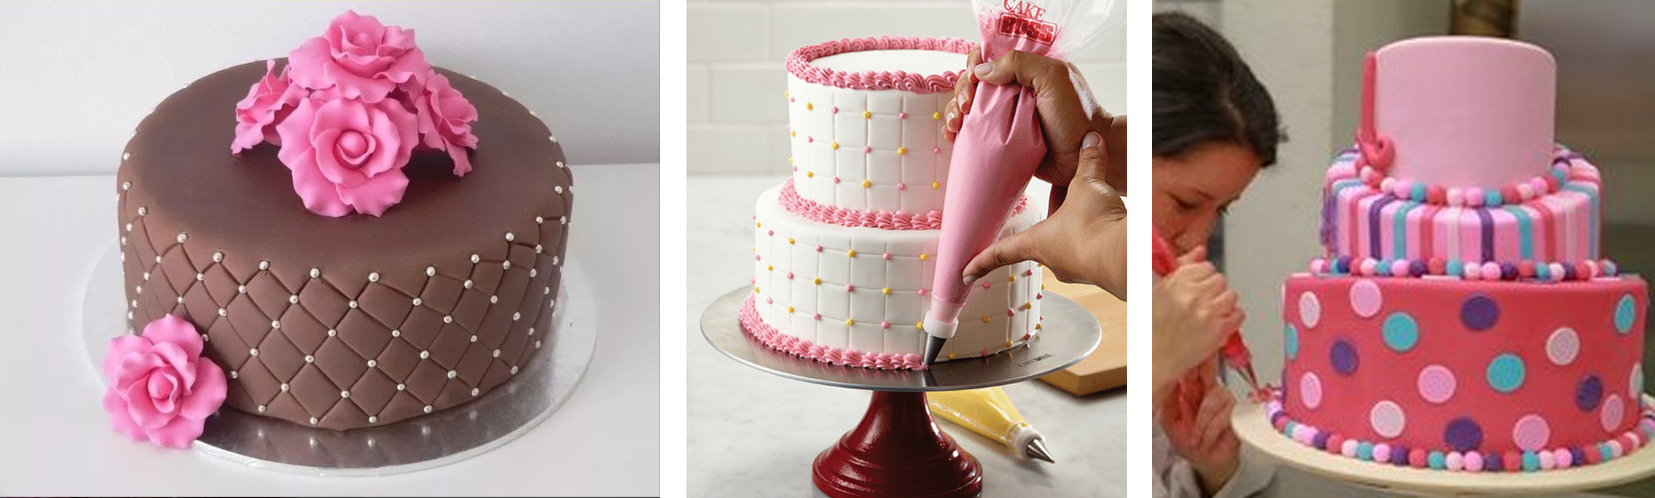 Como fazer bolo confeitado - Inspirações, decorações e dicas para vender!